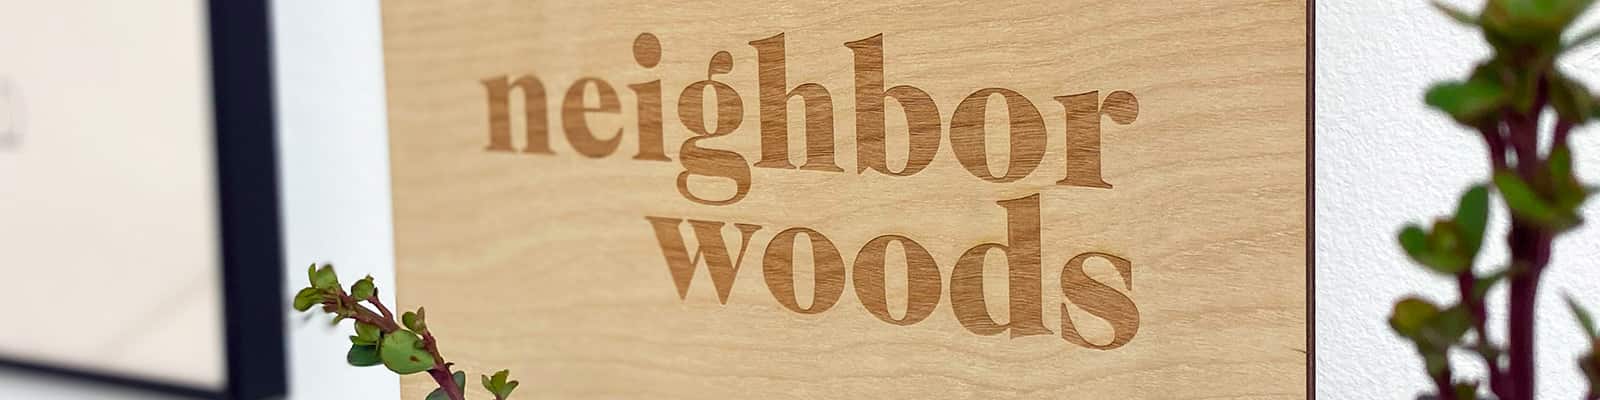 Neighborwoods product shot